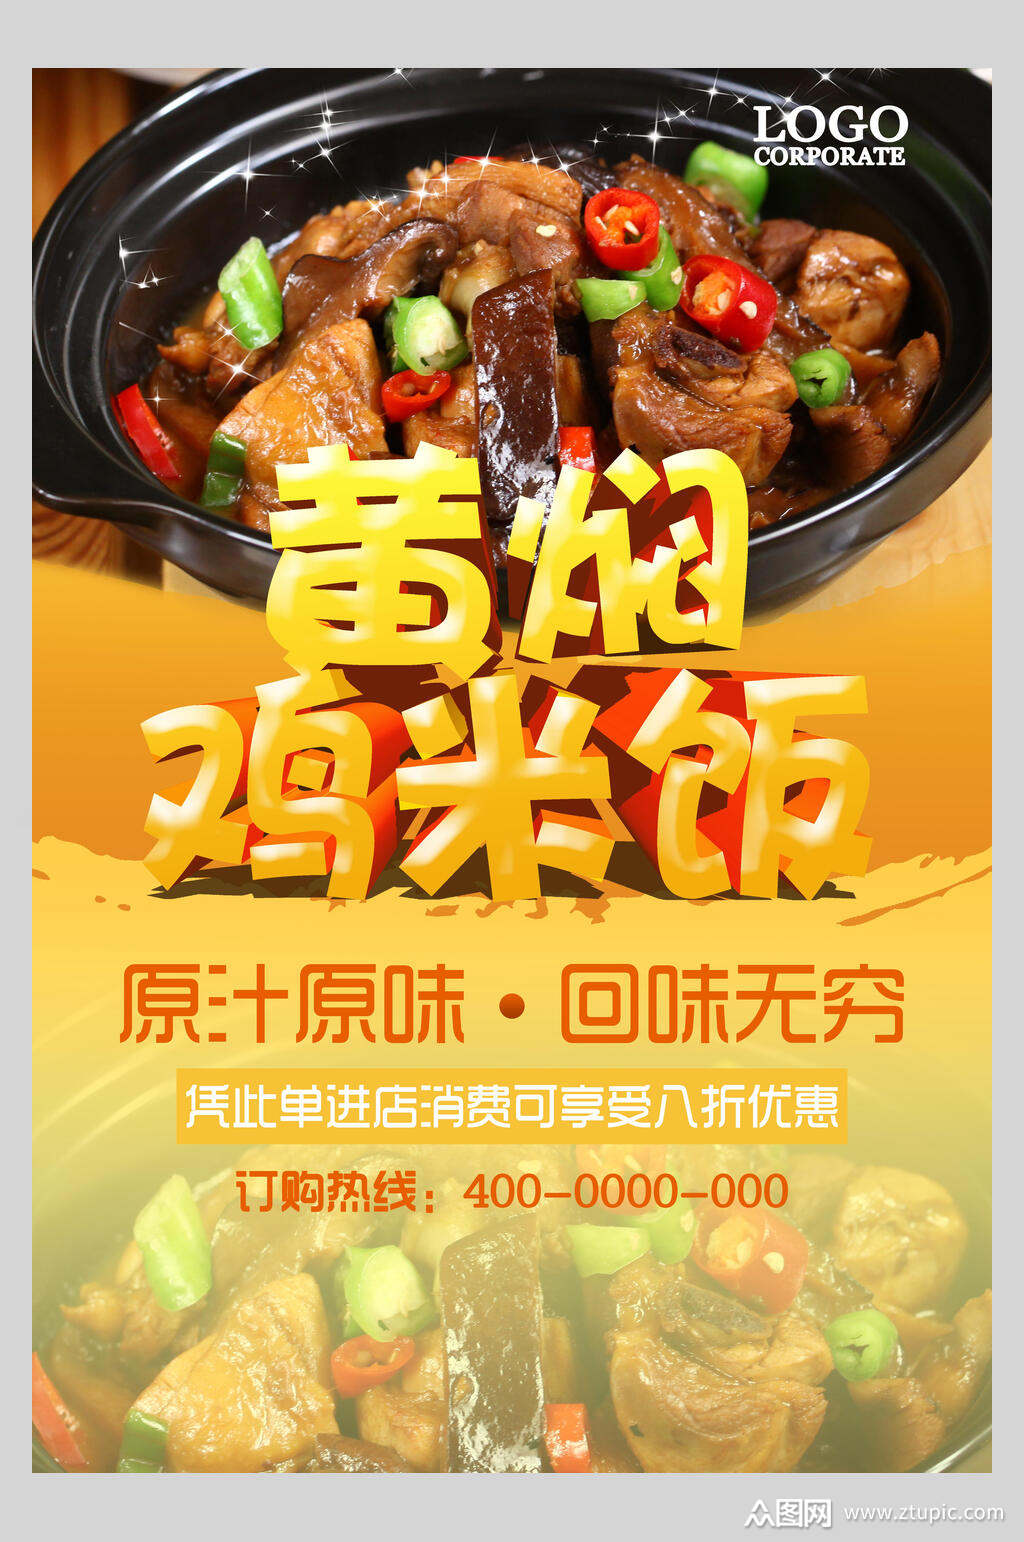 黄焖鸡米饭海报素材免费下载,本作品是由小红1210上传的原创平面广告